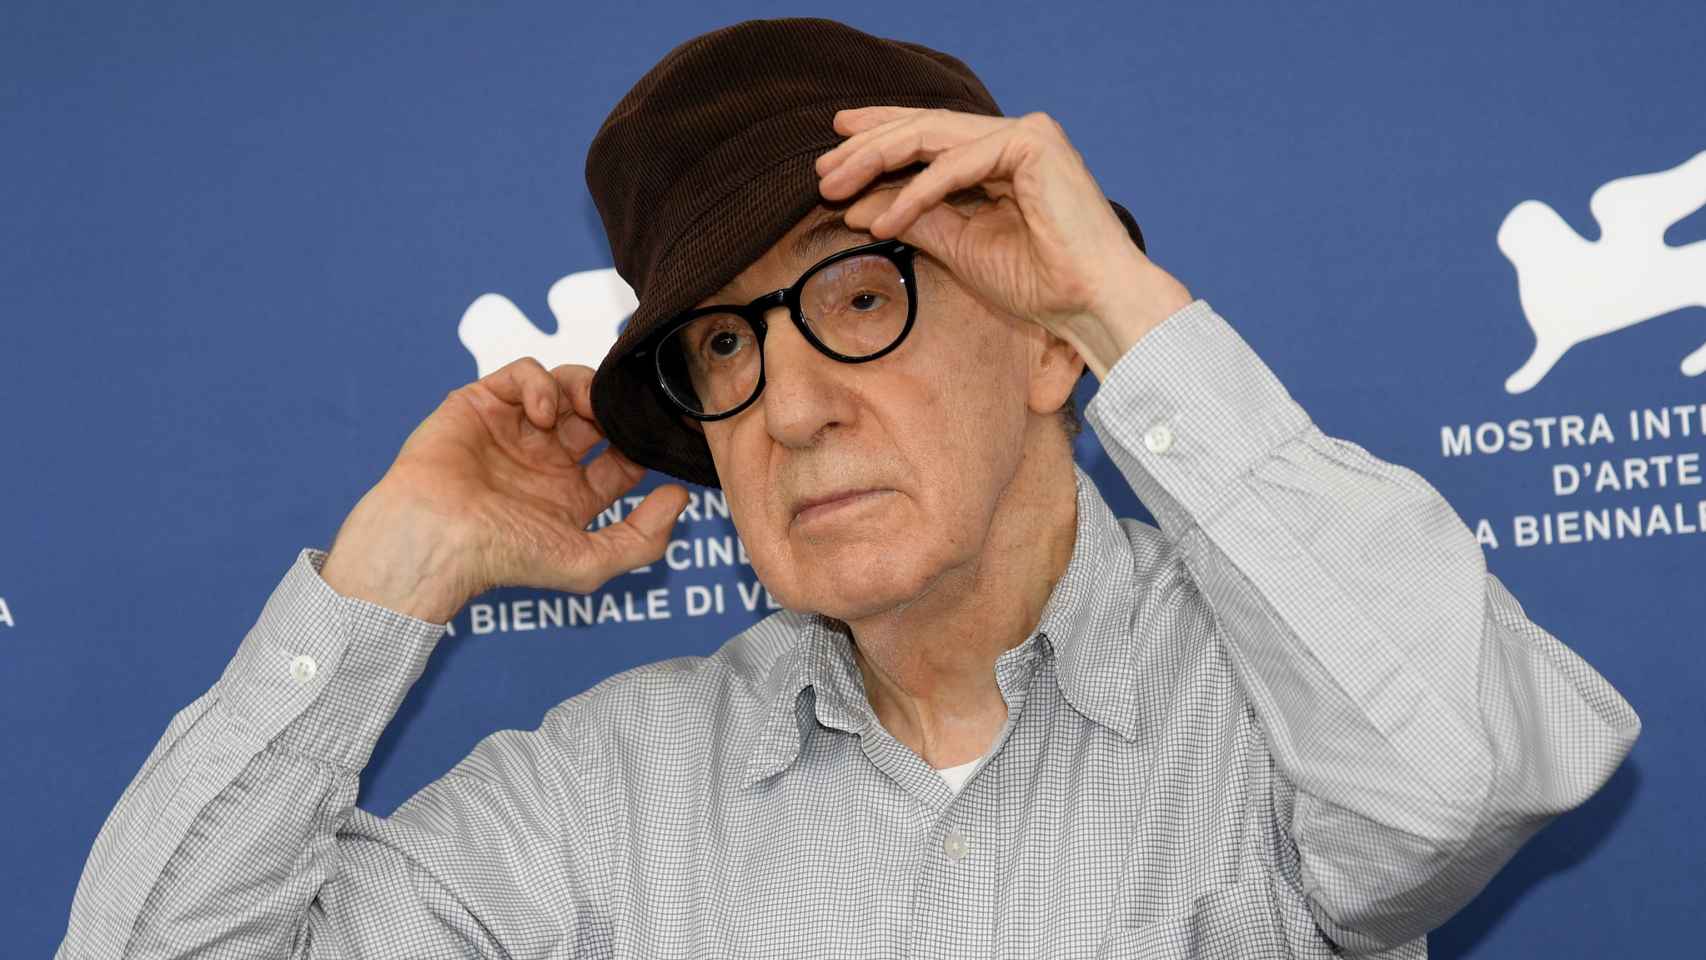 Woody Allen en la presentación de su película 'Golpe de suerte' en el Festival de cine de Venecia. Foto: Claudio Onorati / EFE/EPA